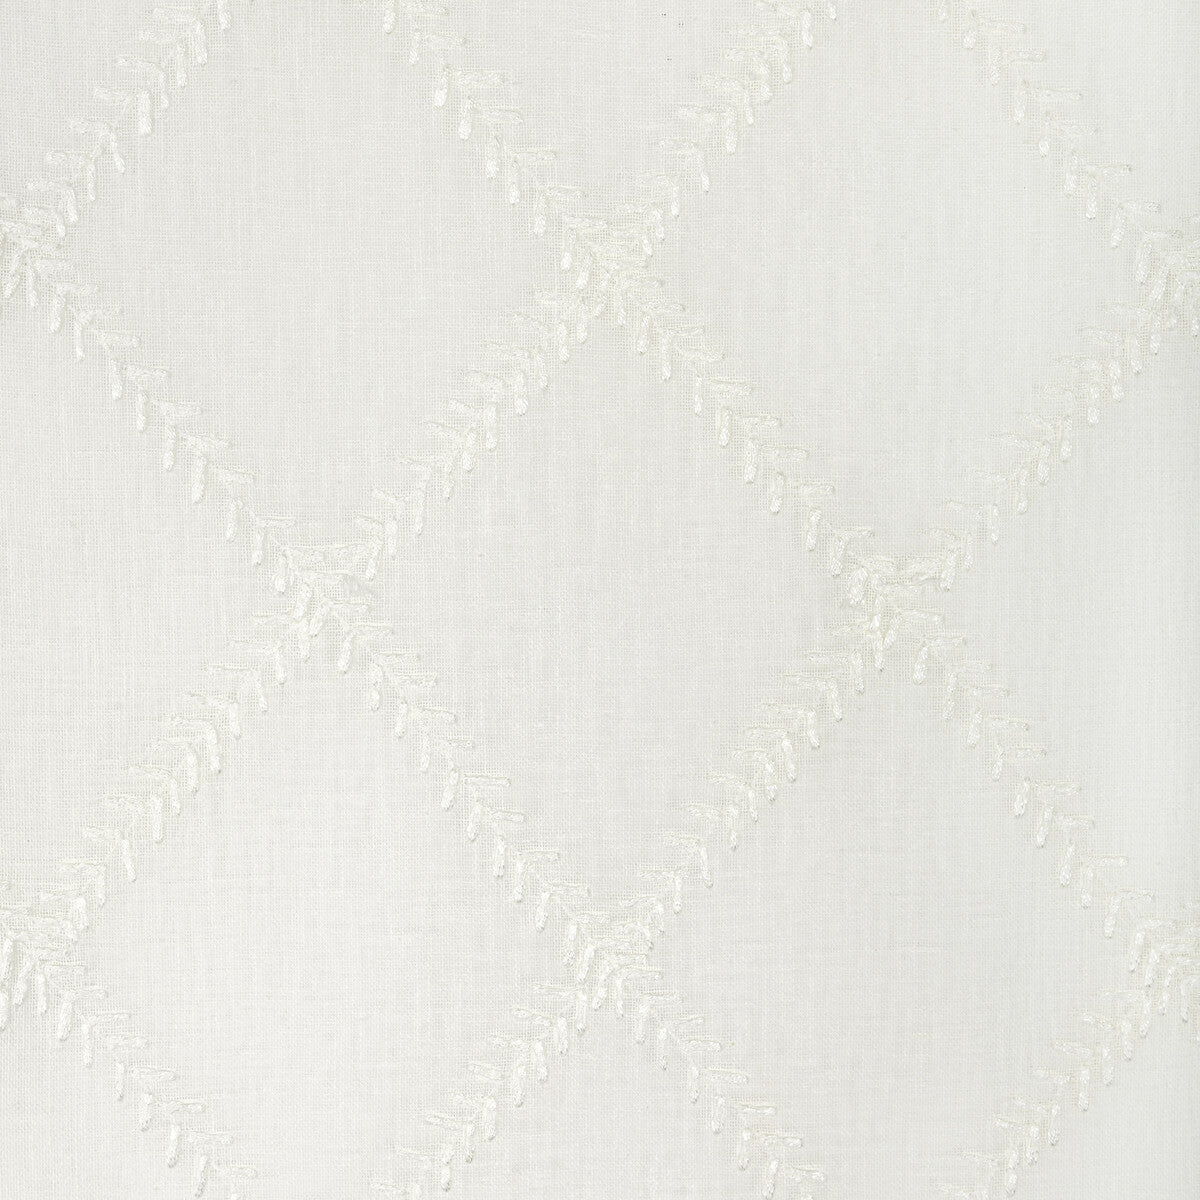 Kravet Basics fabric in 4936-1 color - pattern 4936.1.0 - by Kravet Basics